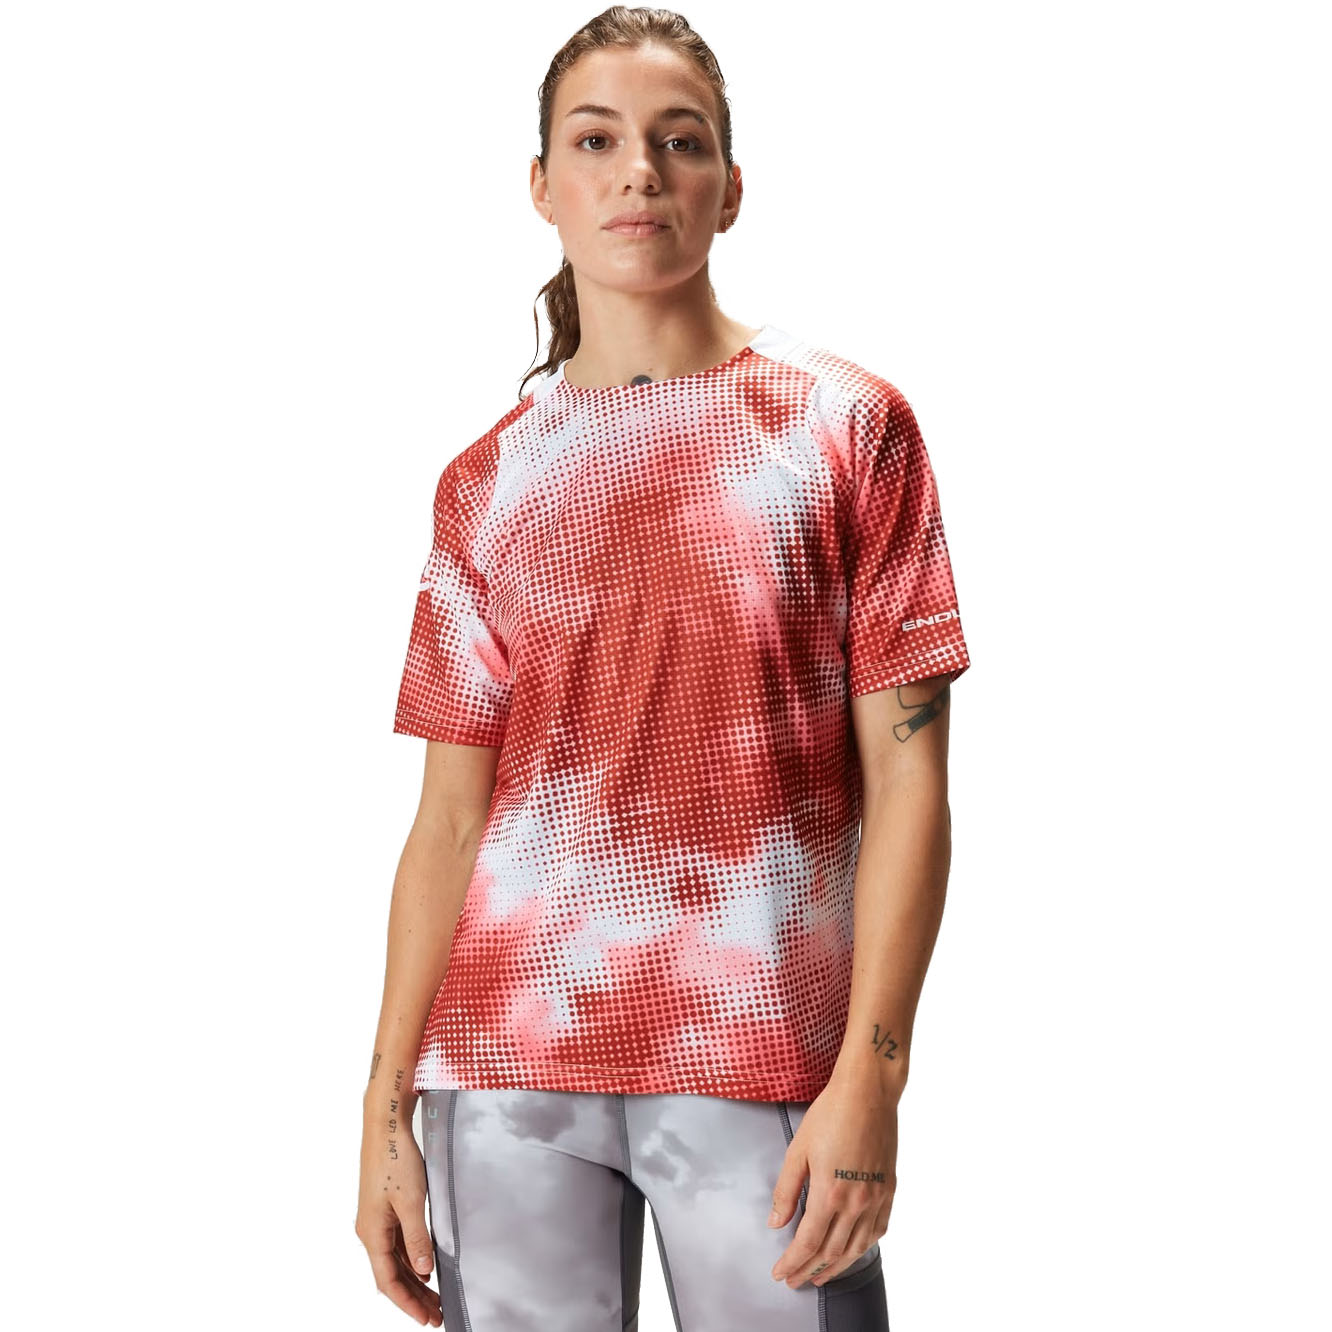 Productfoto van Endura Pixel Cloud LTD T-Shirt Dames - pomegranate